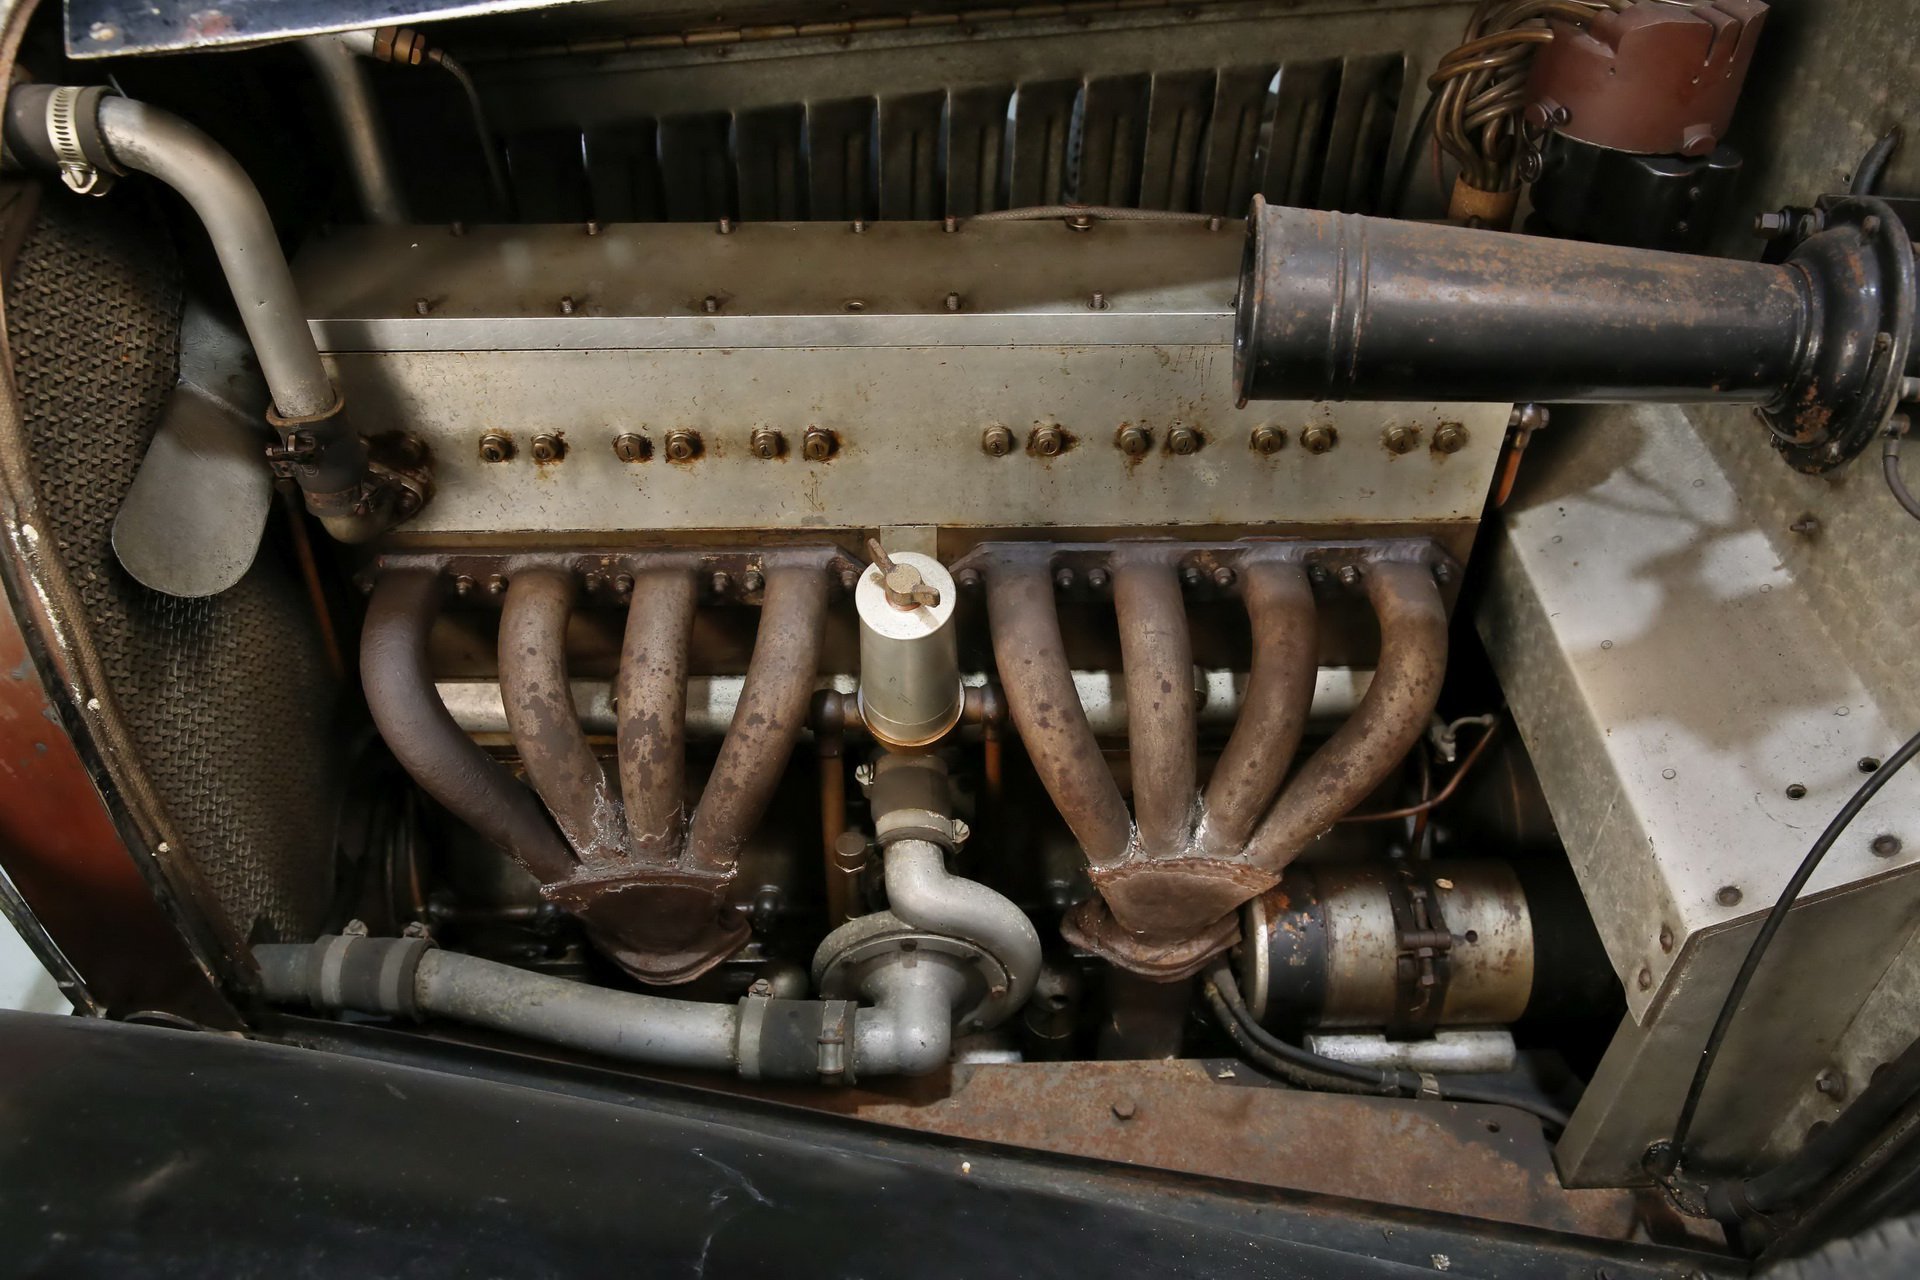 Zabarikádovaná stodola ukrývala sbírku vozů Bugatti